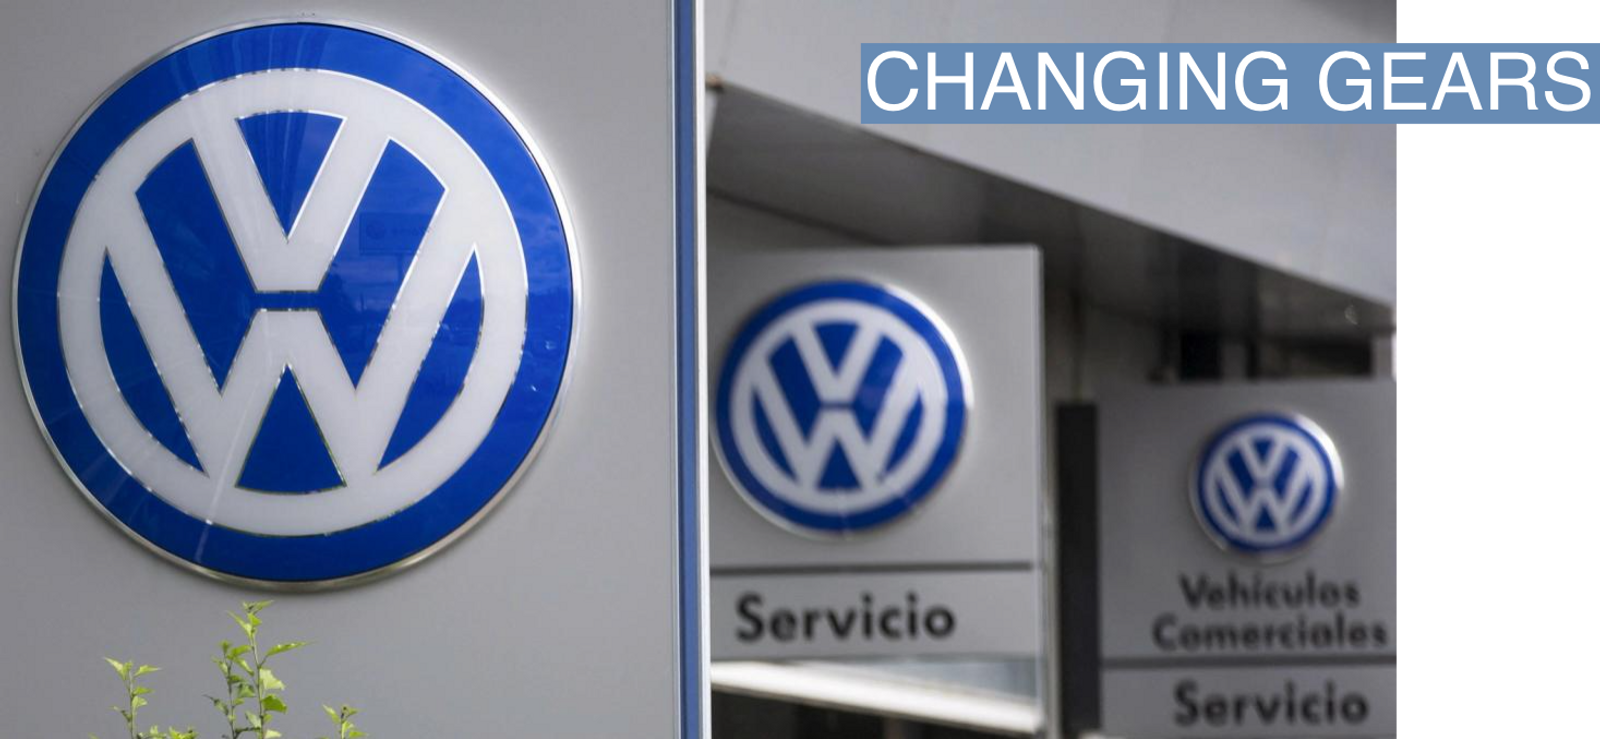 Volkswagen logos at a dealership in Madrid.